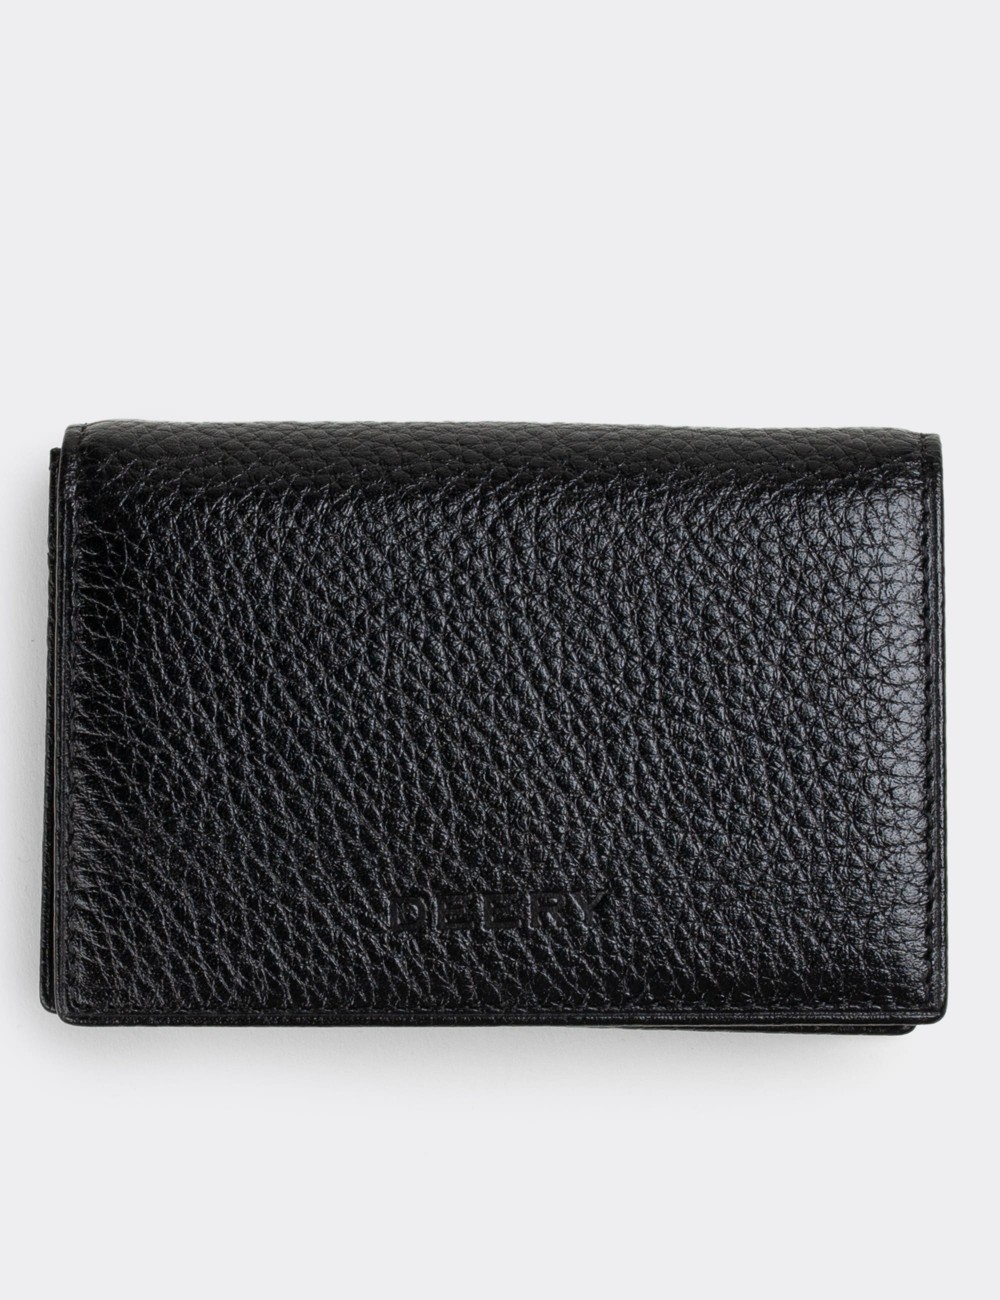  Leather Black Men's Wallet - 00585MSYHZ01